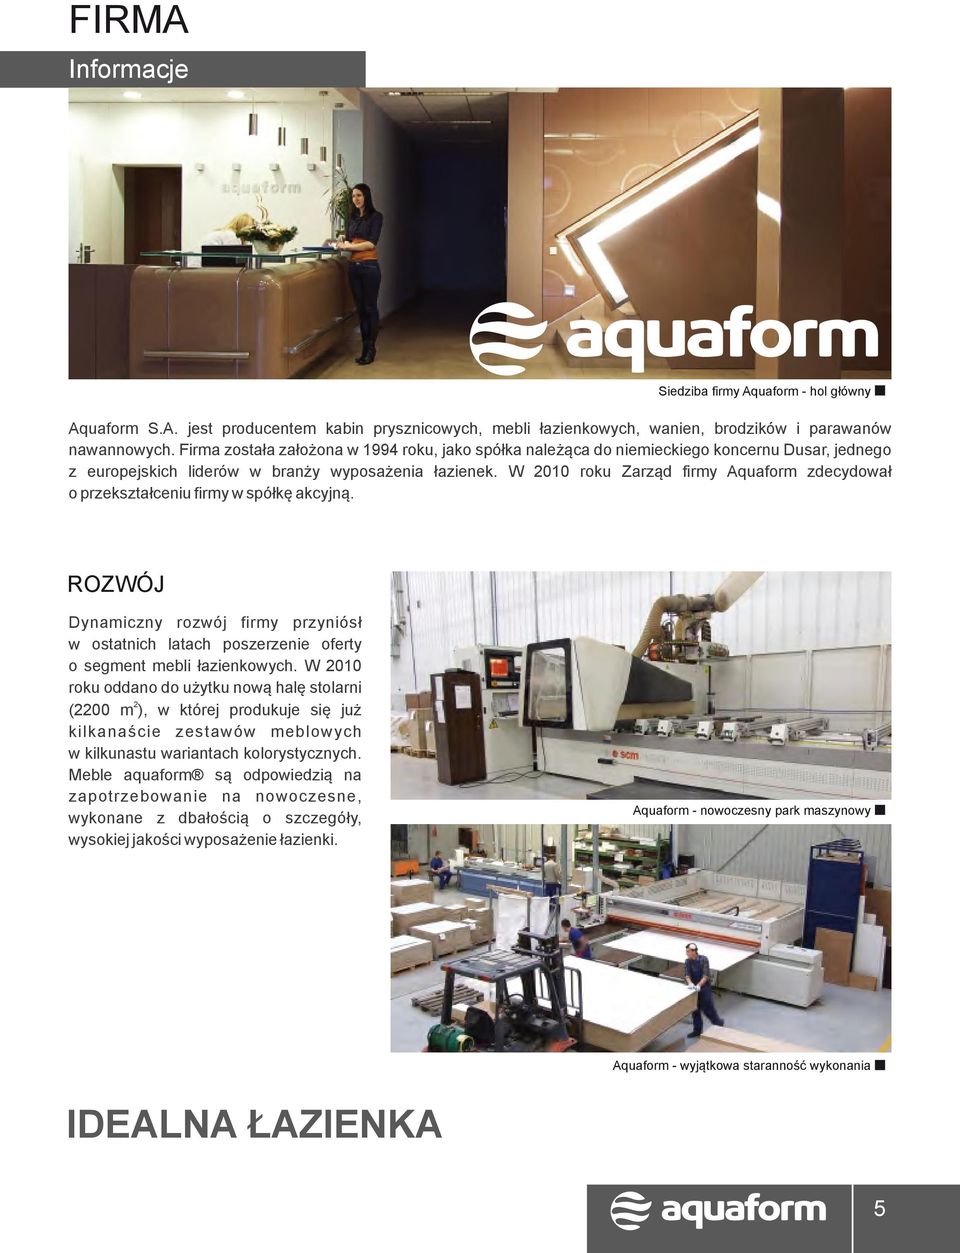 W 2010 roku Zarząd firmy Aquaform zdecydował o przekształceniu firmy w spółkę akcyjną. ROZWÓJ Dynamiczny rozwój firmy przyniósł w ostatnich latach poszerzenie oferty o segment mebli łazienkowych.